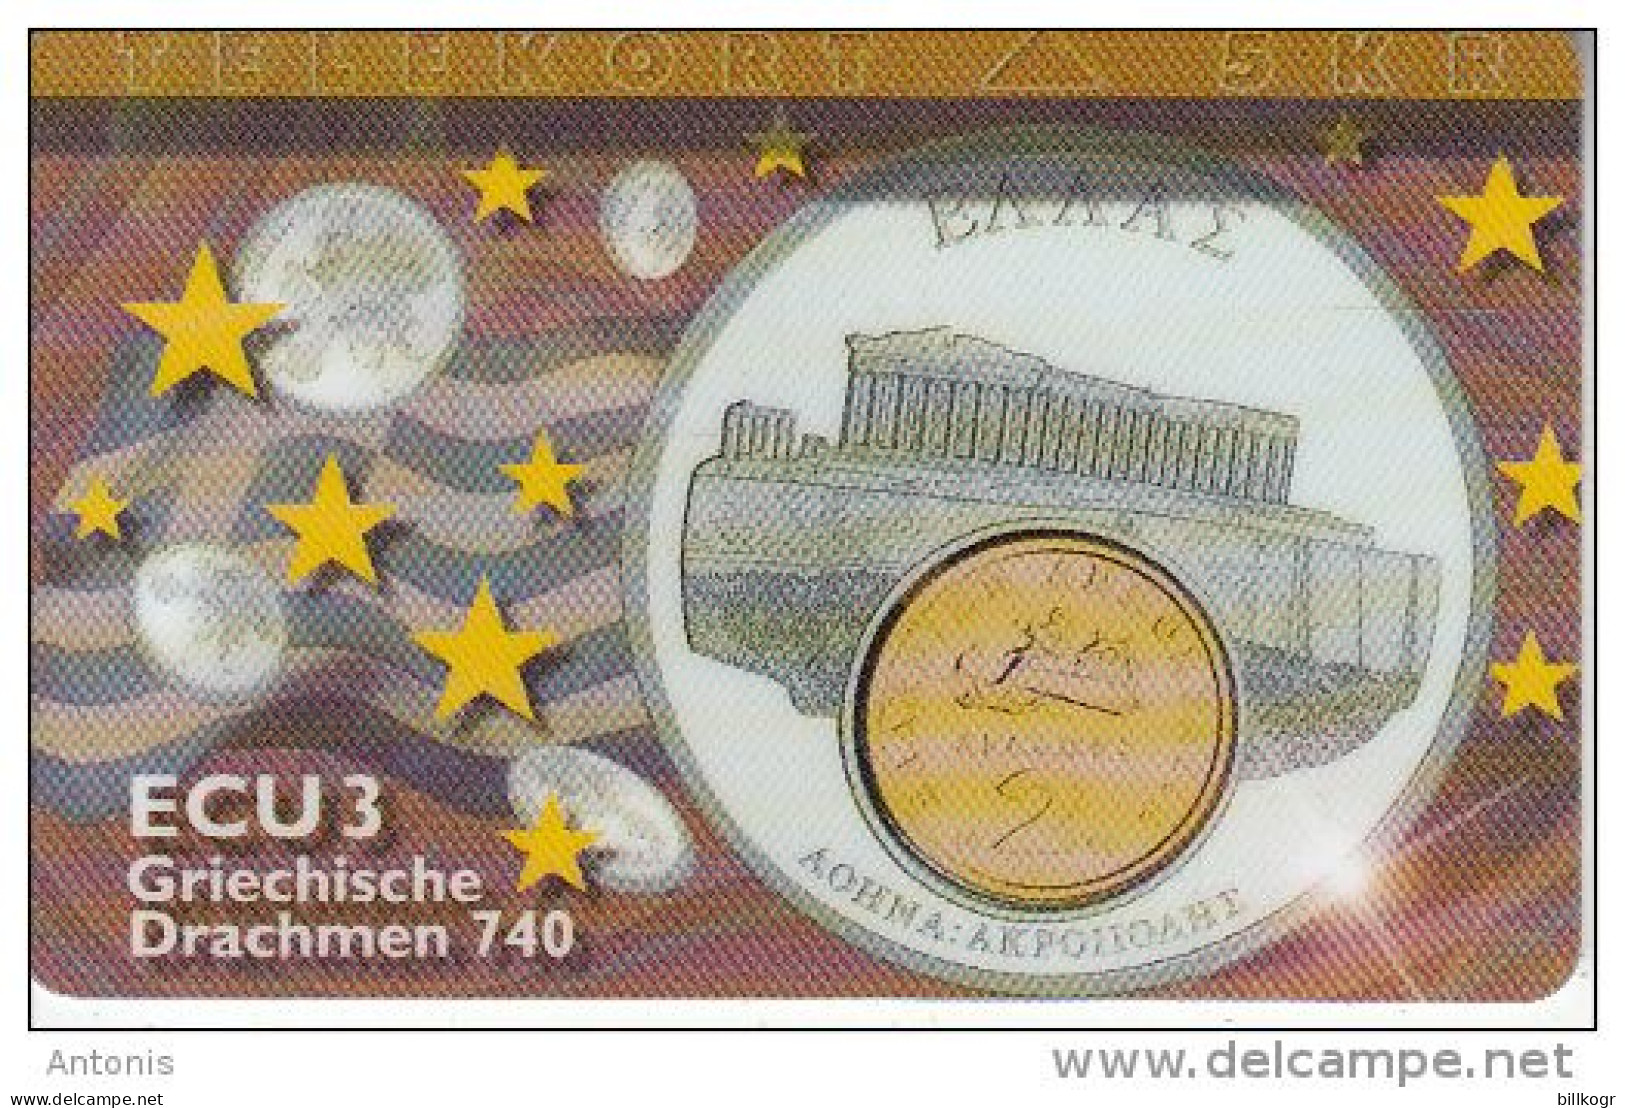 DENMARK - Athens/Acropolis, 2 GRD Coin, ECU Series/Greece, Tirage 700, 04/97, Mint - Denmark